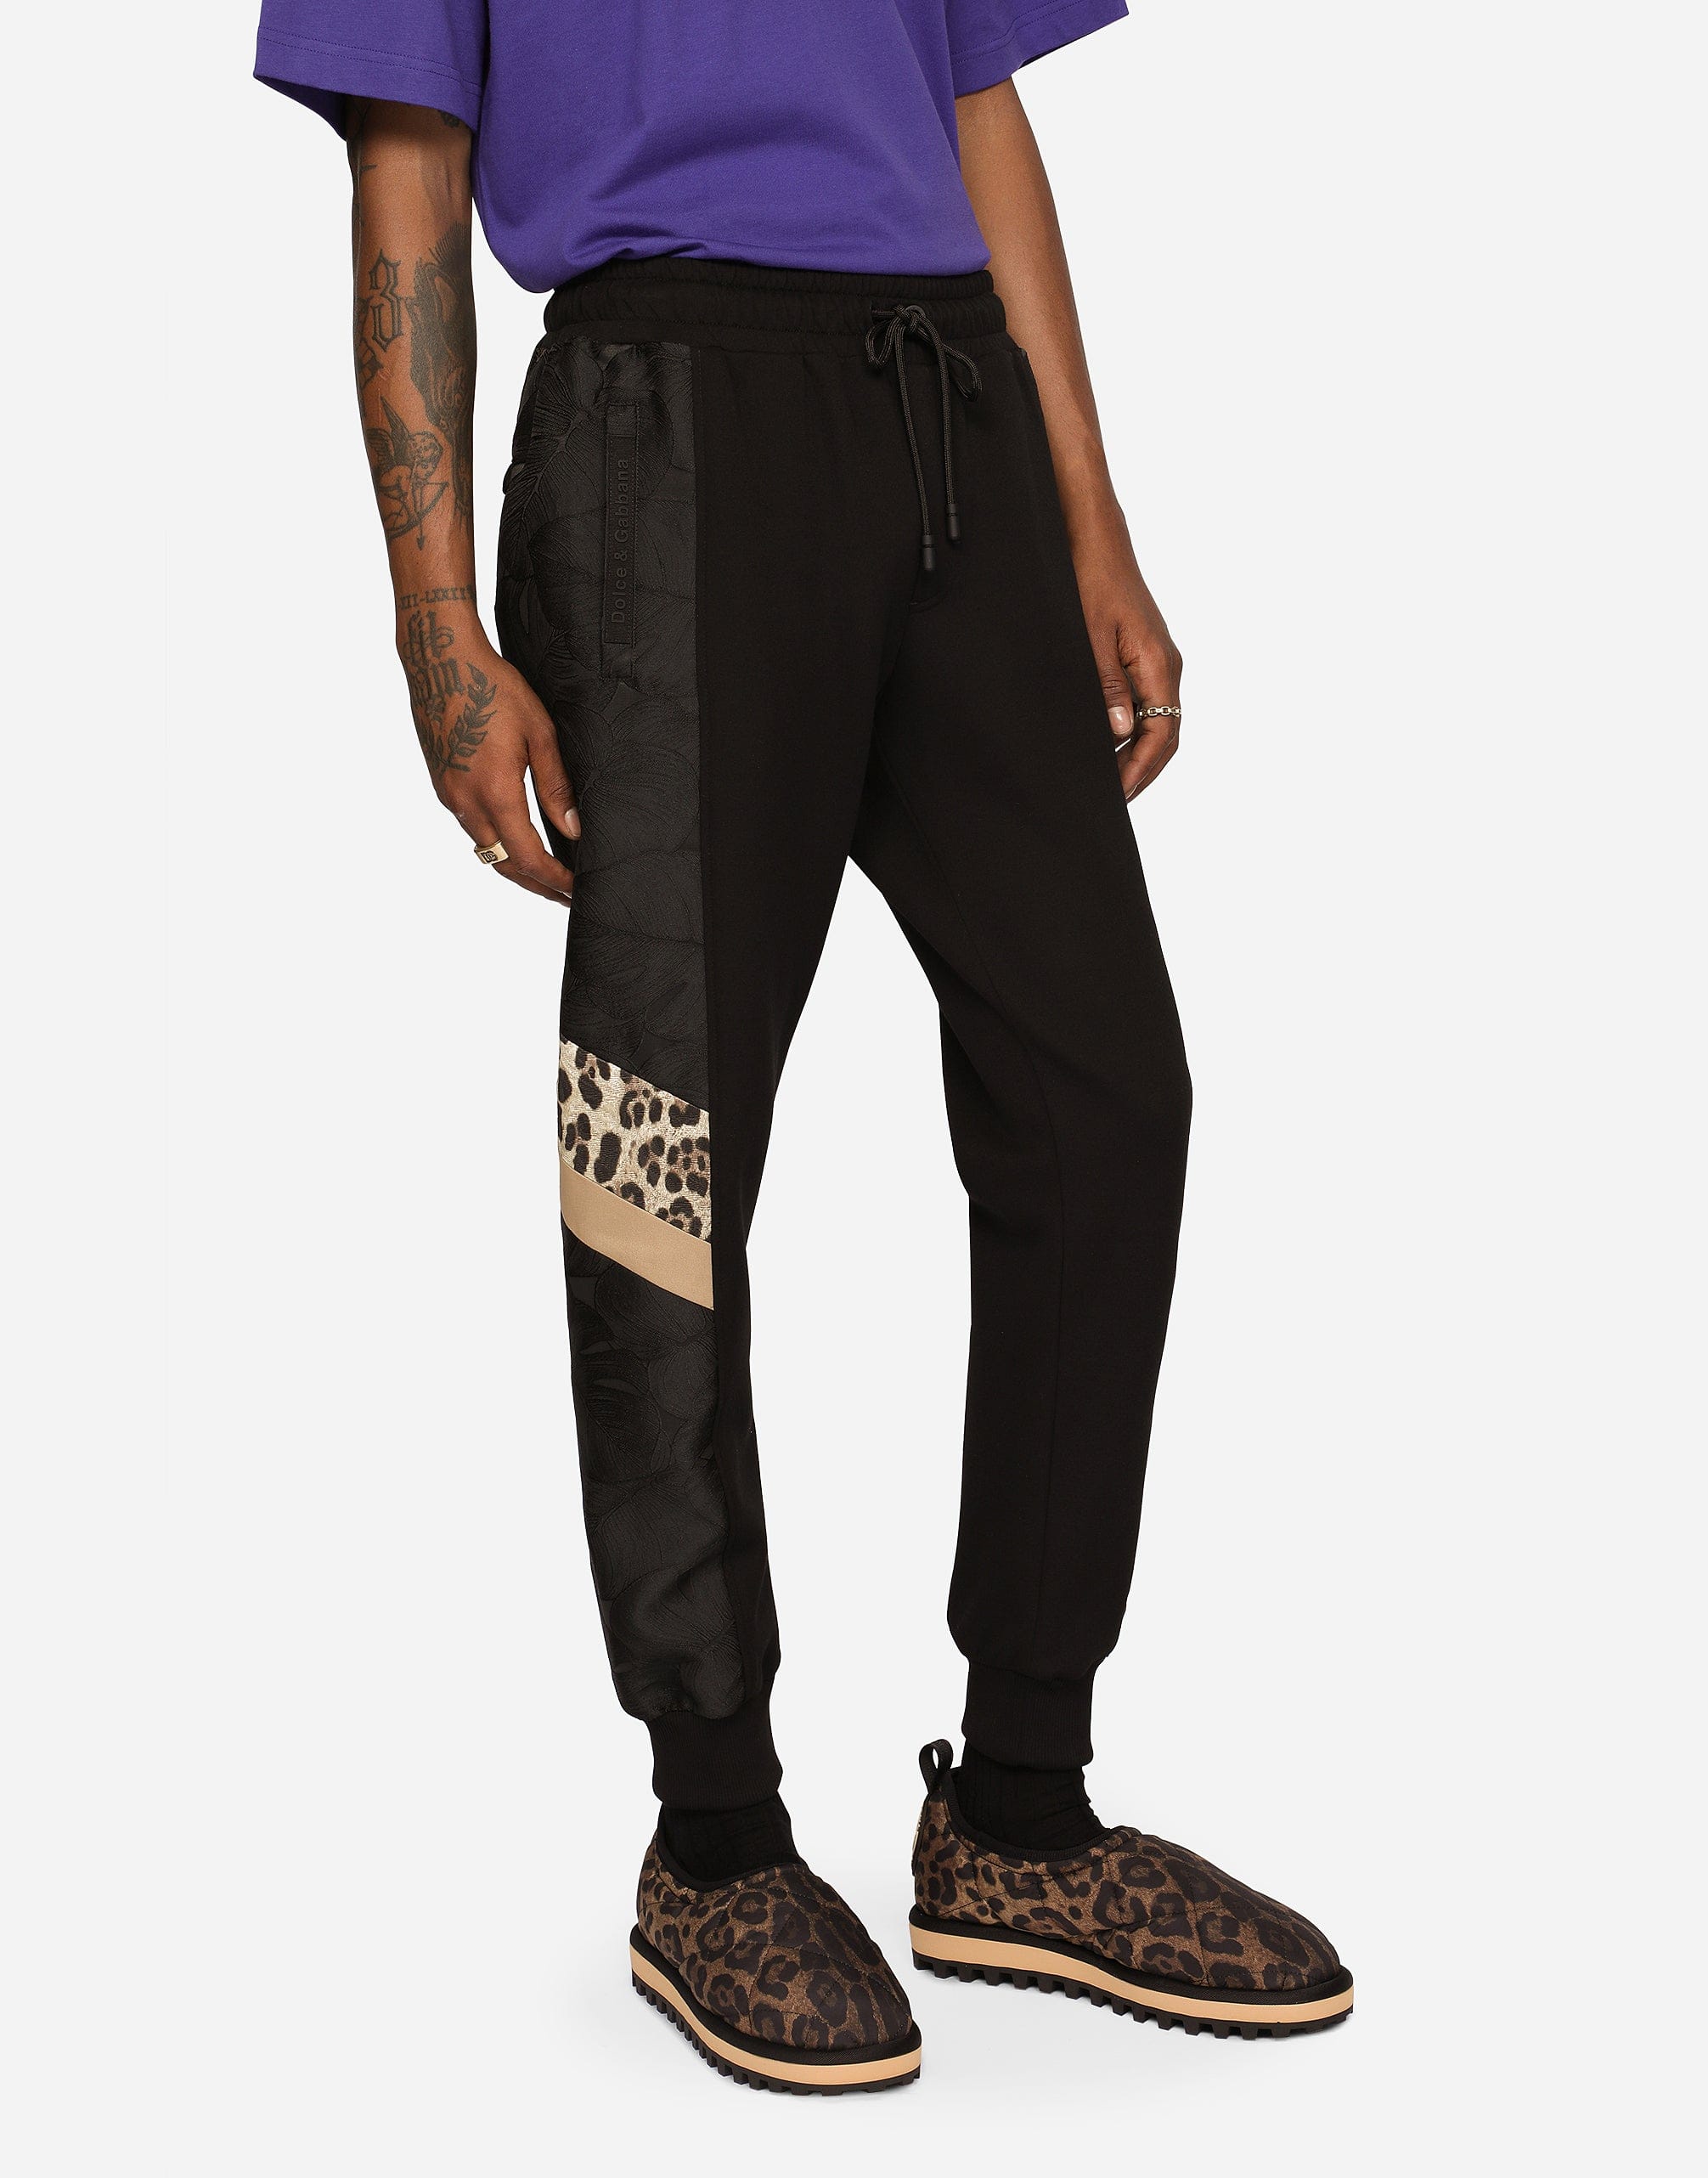 Pantalon de jogging en fabrics mixtes avec patch en imprimé animal